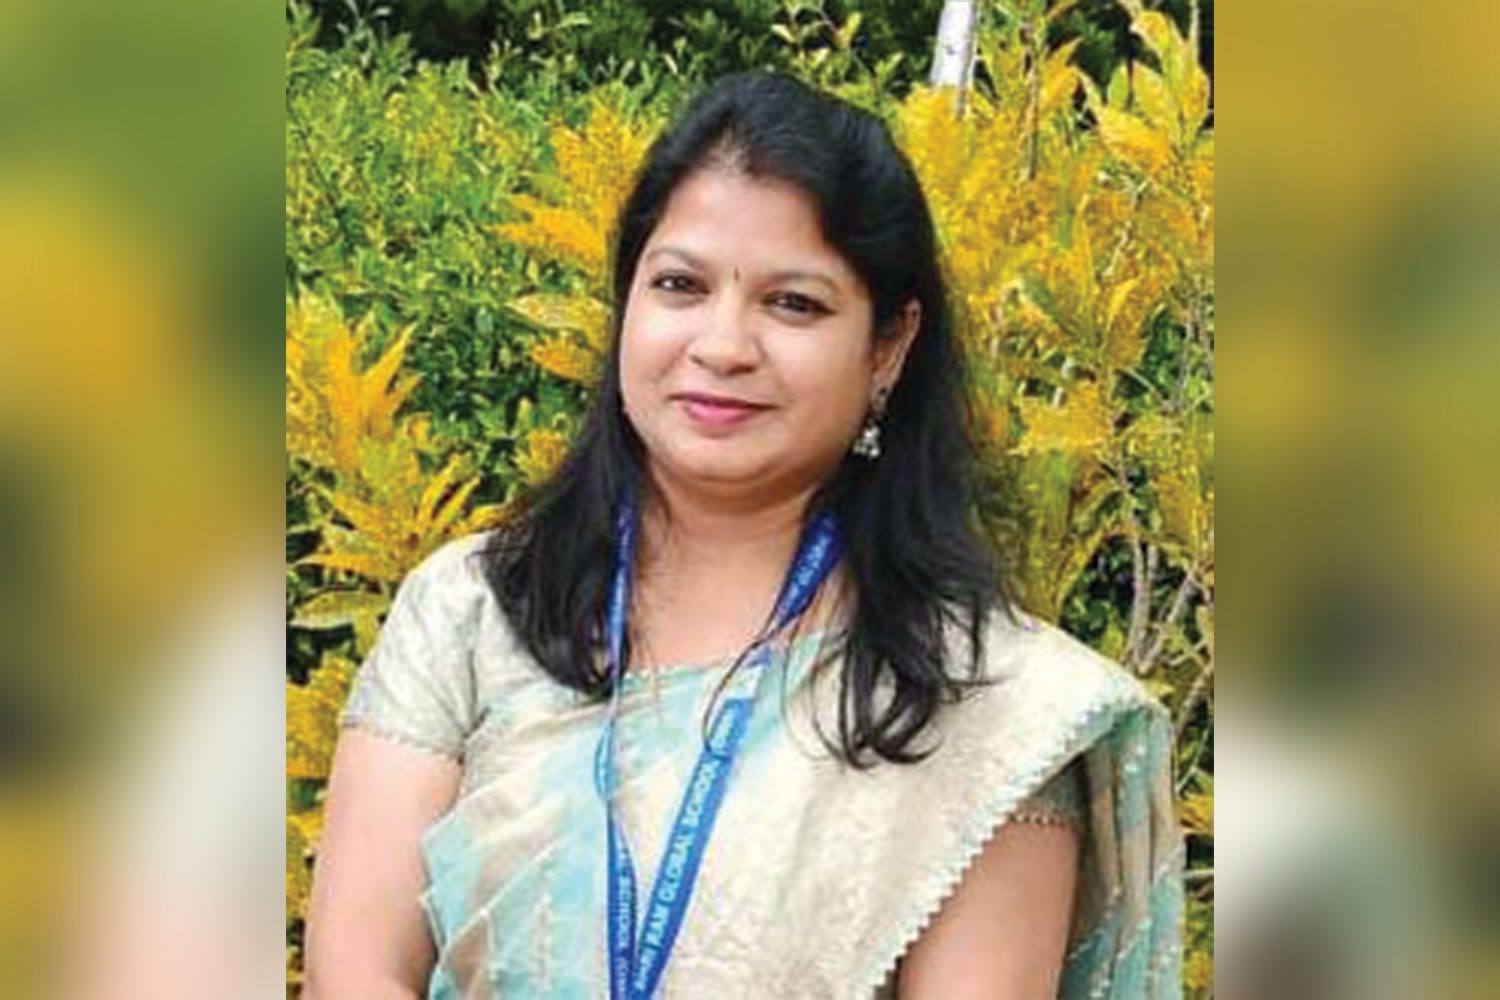 Ms. Shweta Singhal